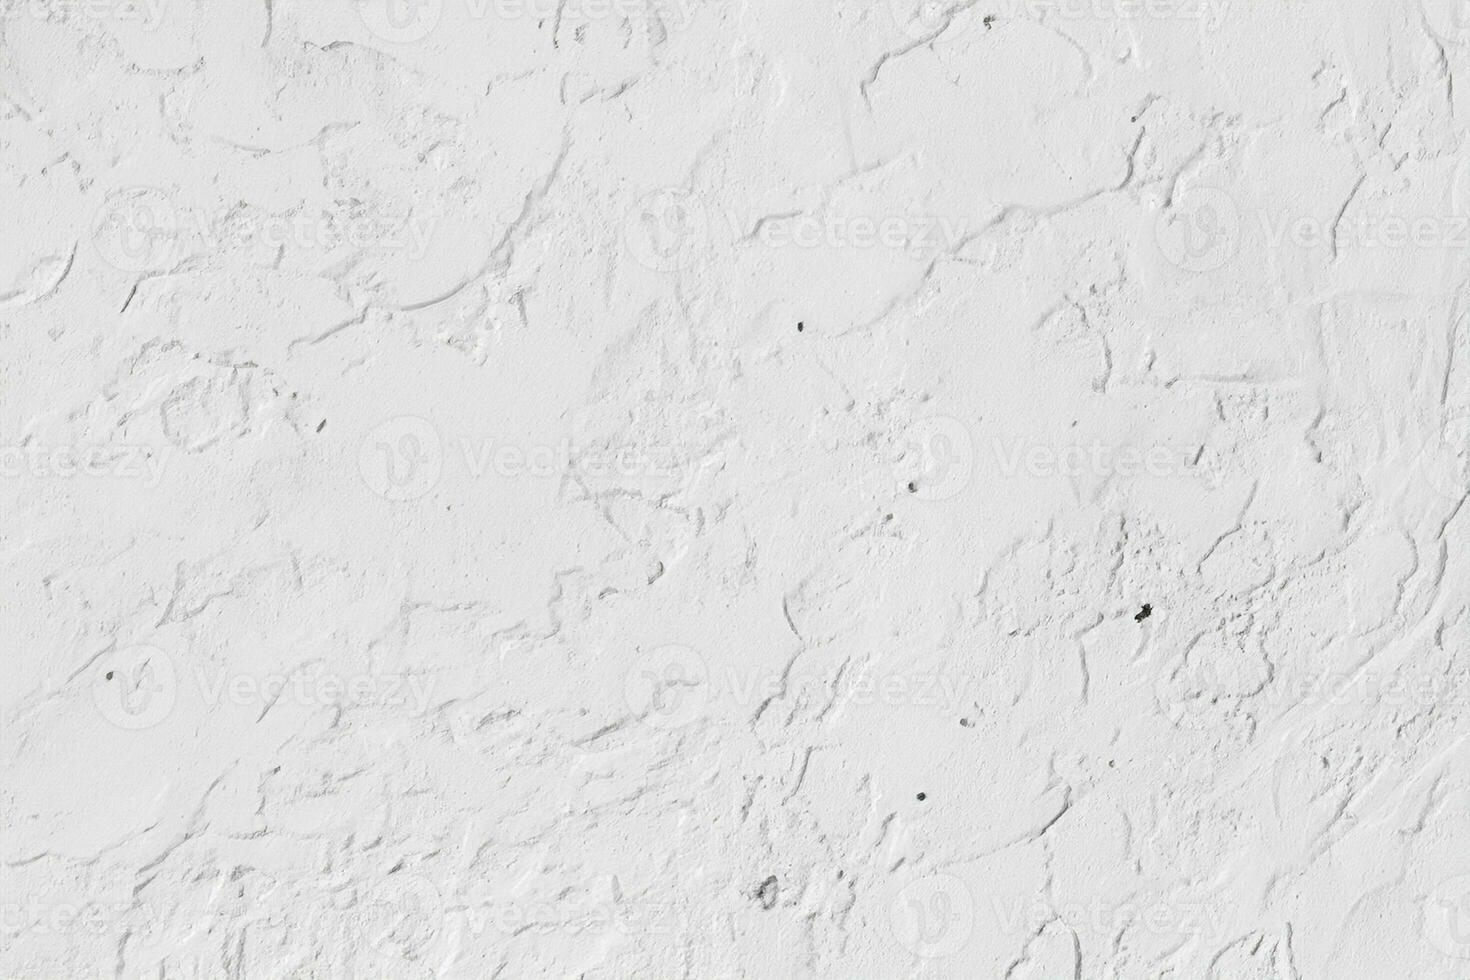 texturerad av betong plåster vägg och vit bakgrund foto